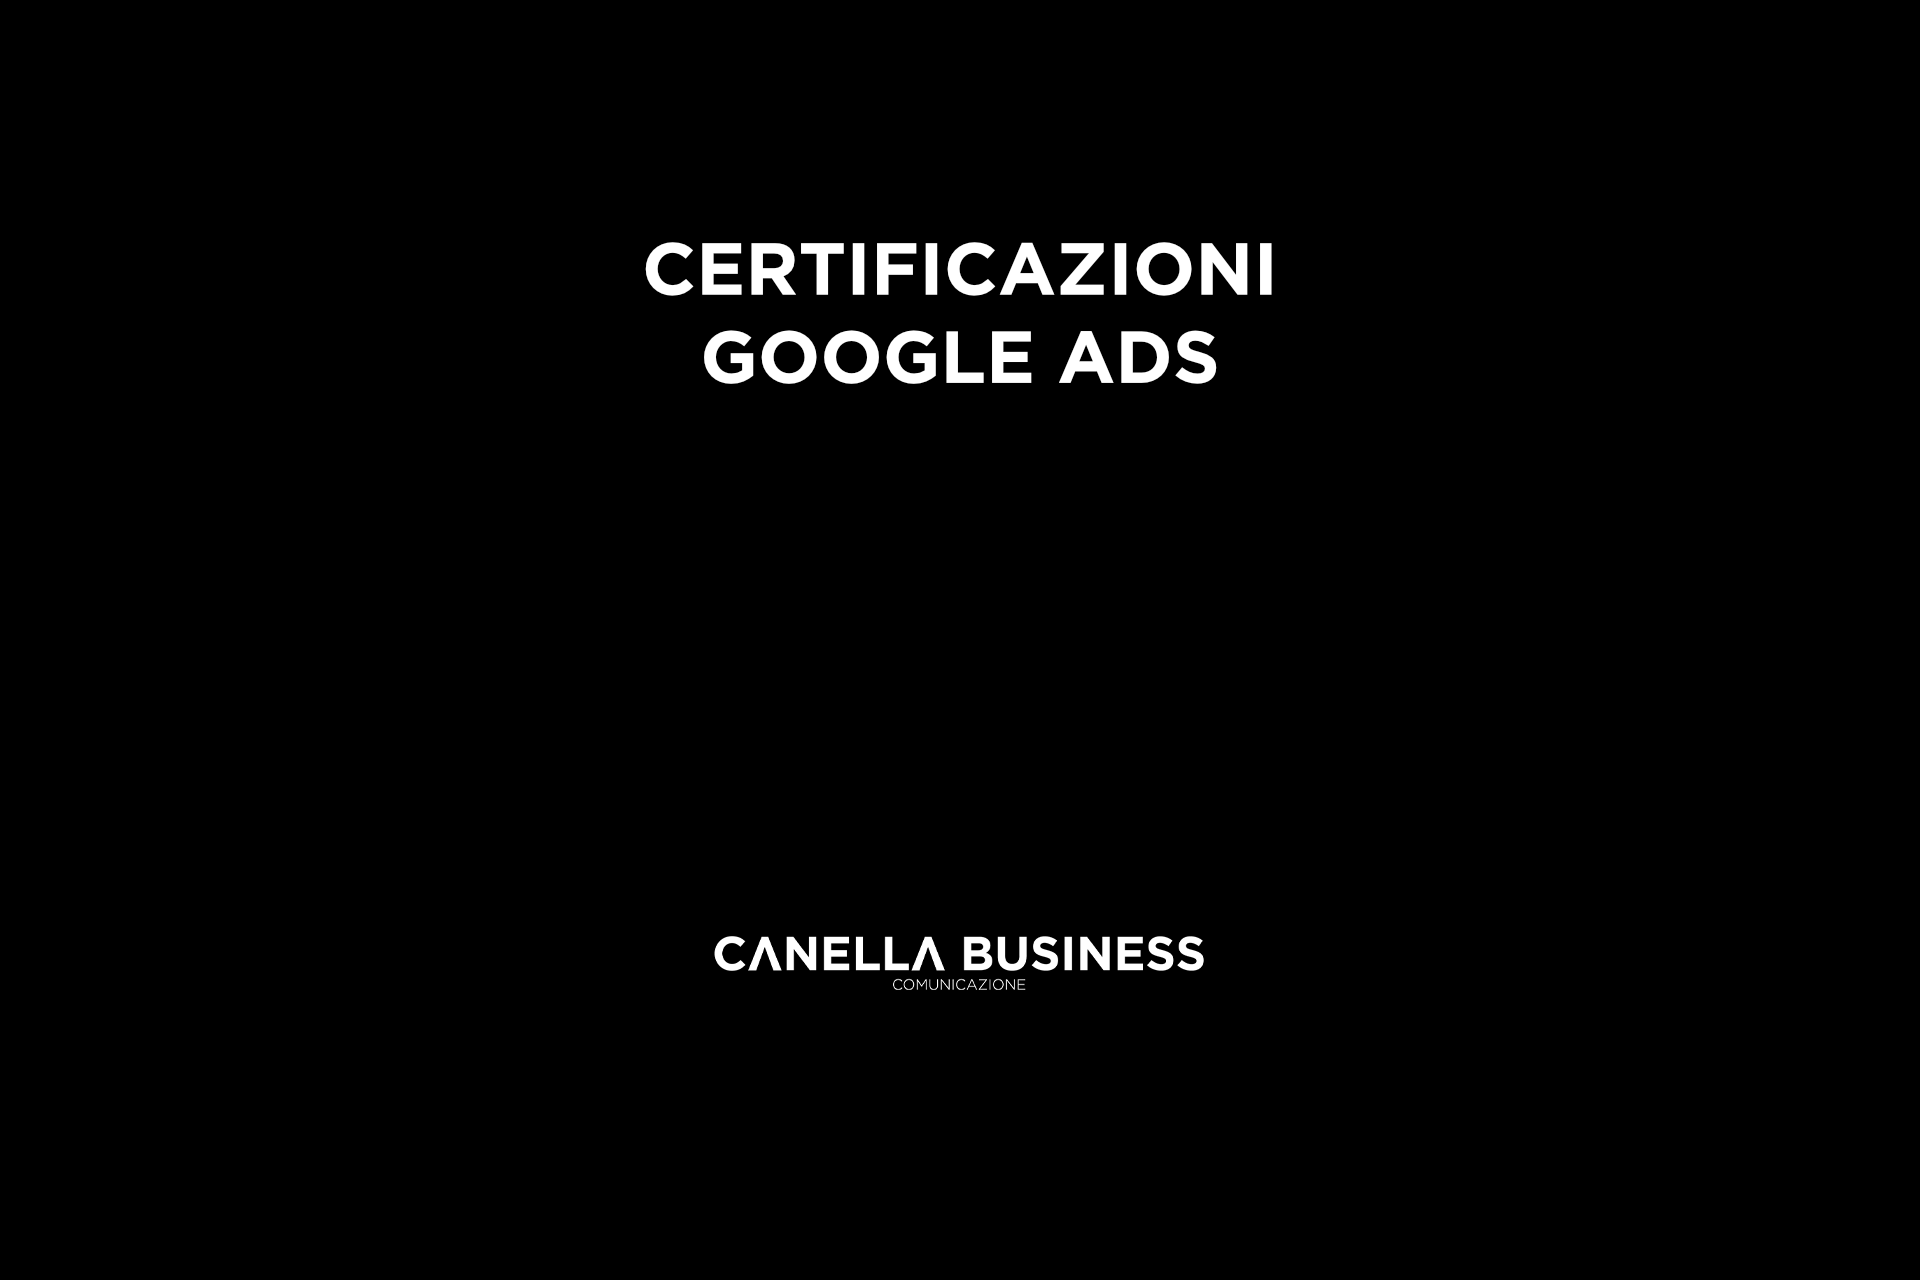 Certificazioni Google Ads